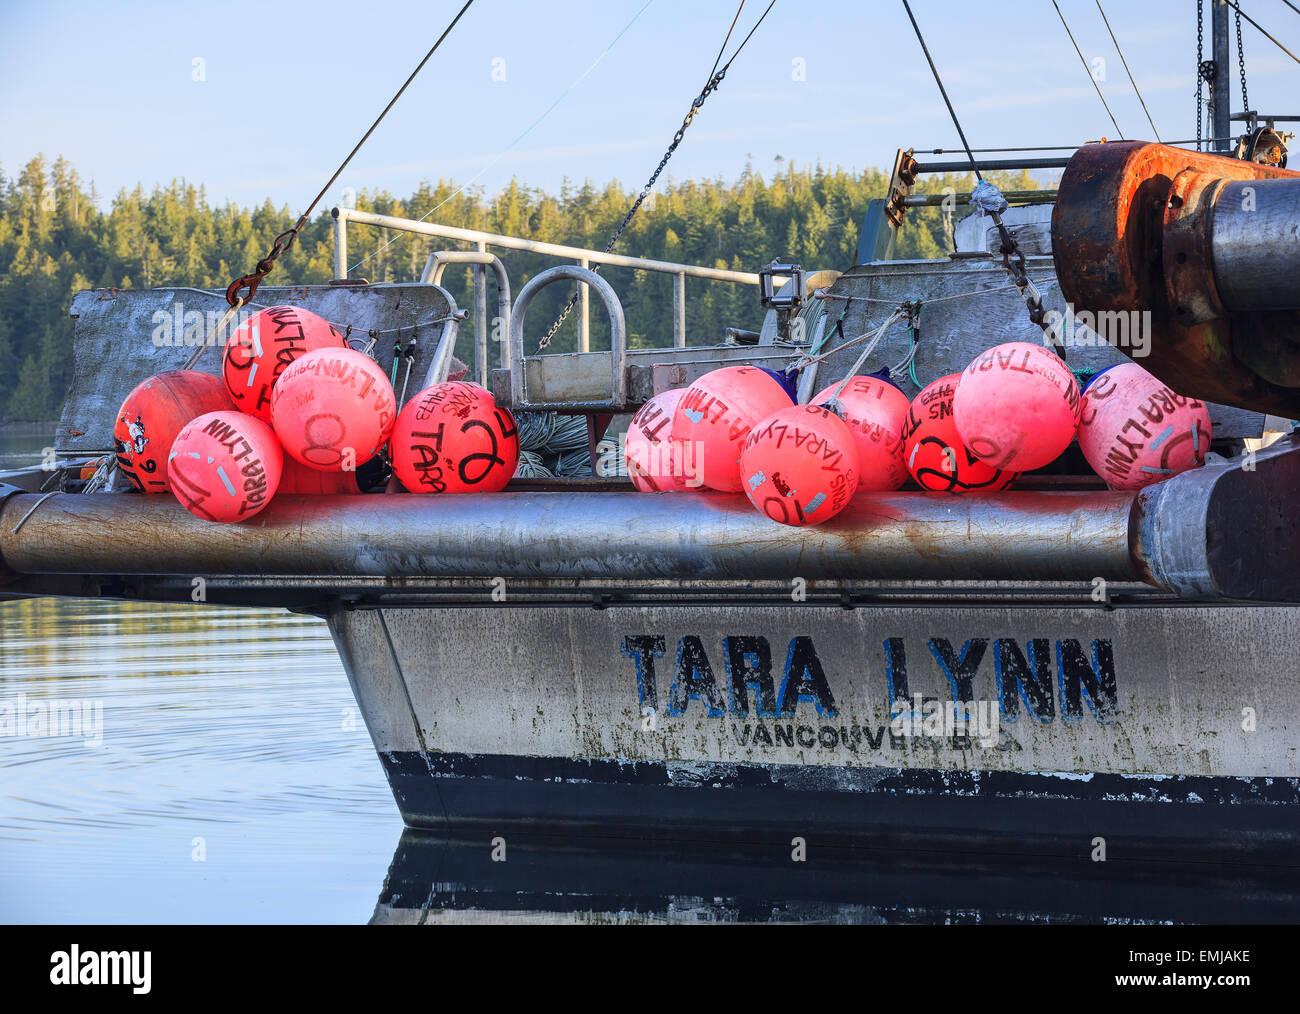 Flotte sur un bateau de pêche commerciale, Ucluelet, île de Vancouver, Colombie-Britannique, Canada Banque D'Images